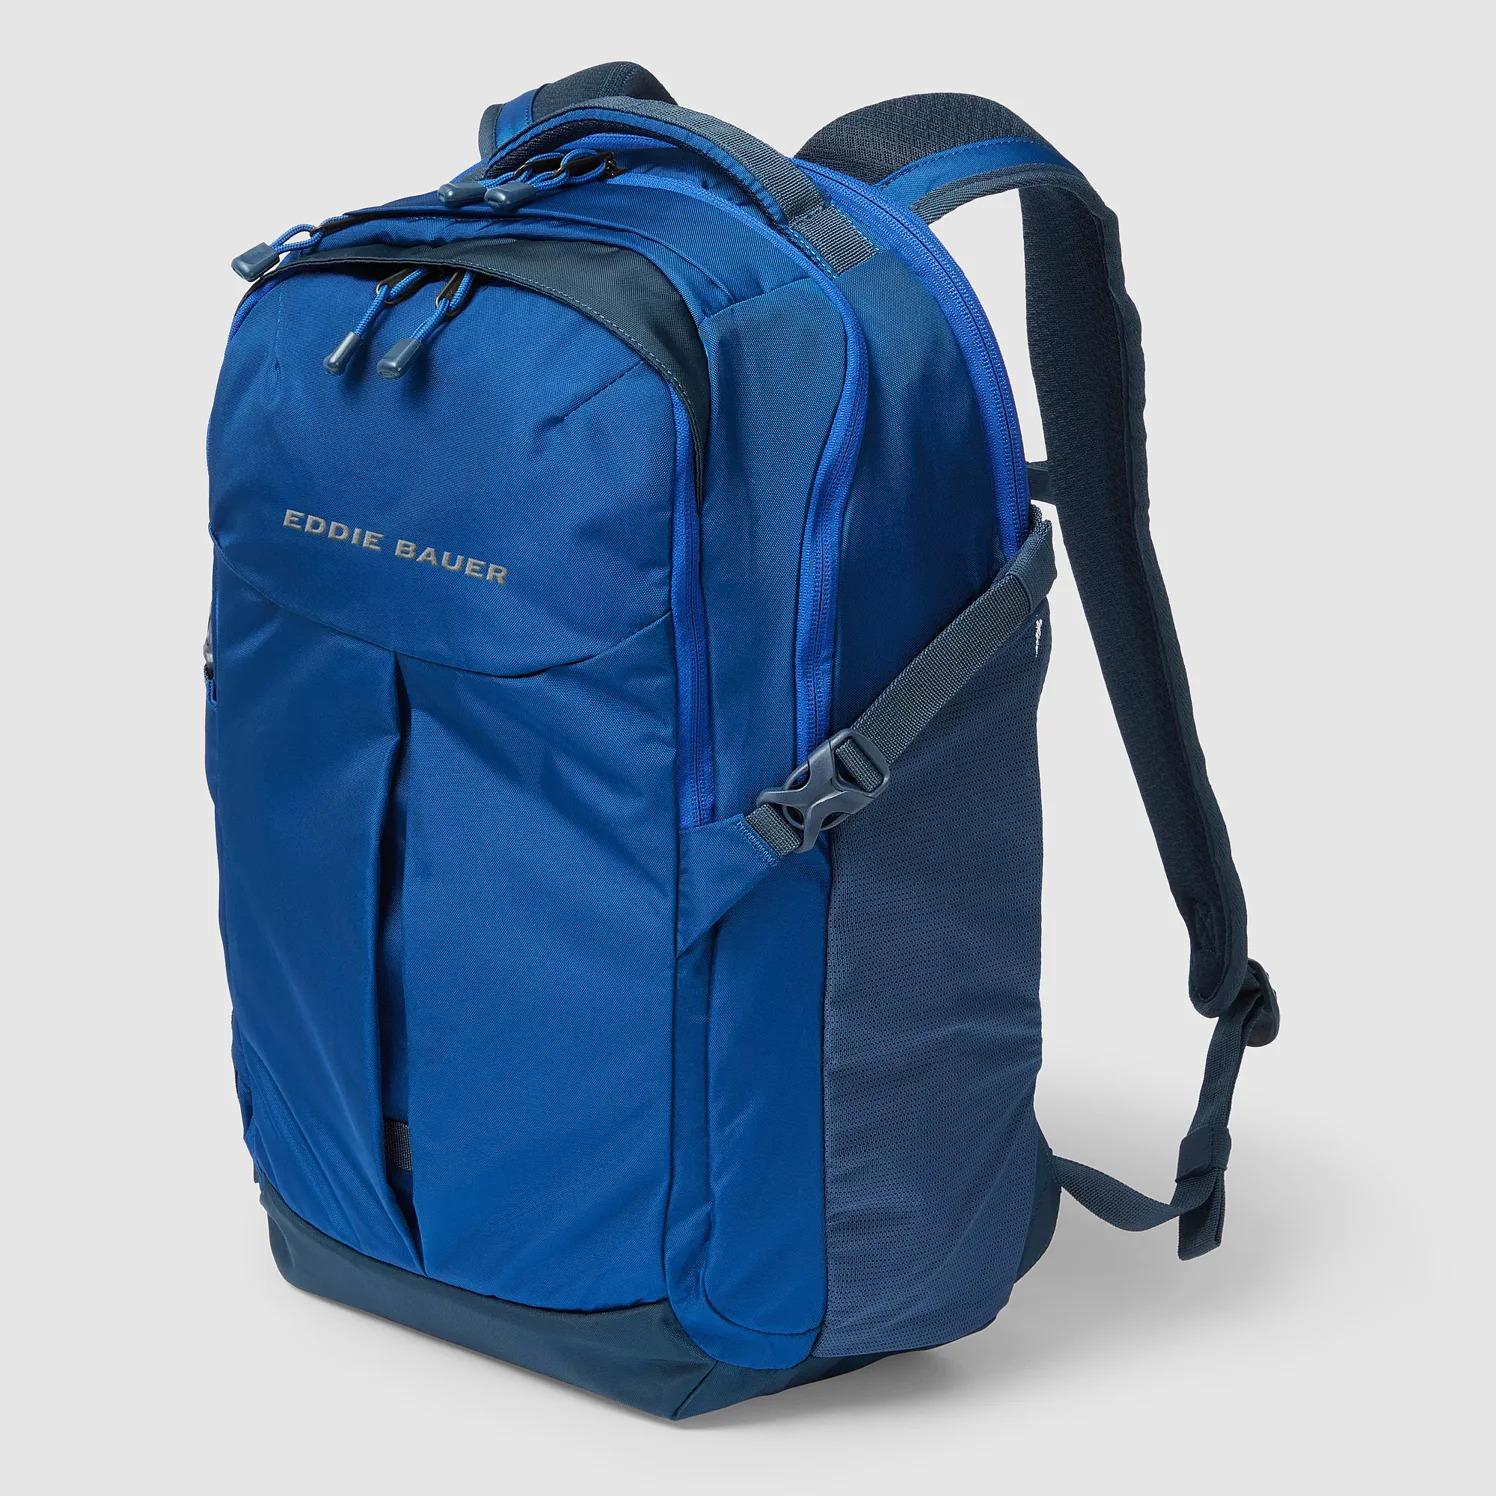 Eddie Bauer 30L Adventurer Backpack 2.0 for $40